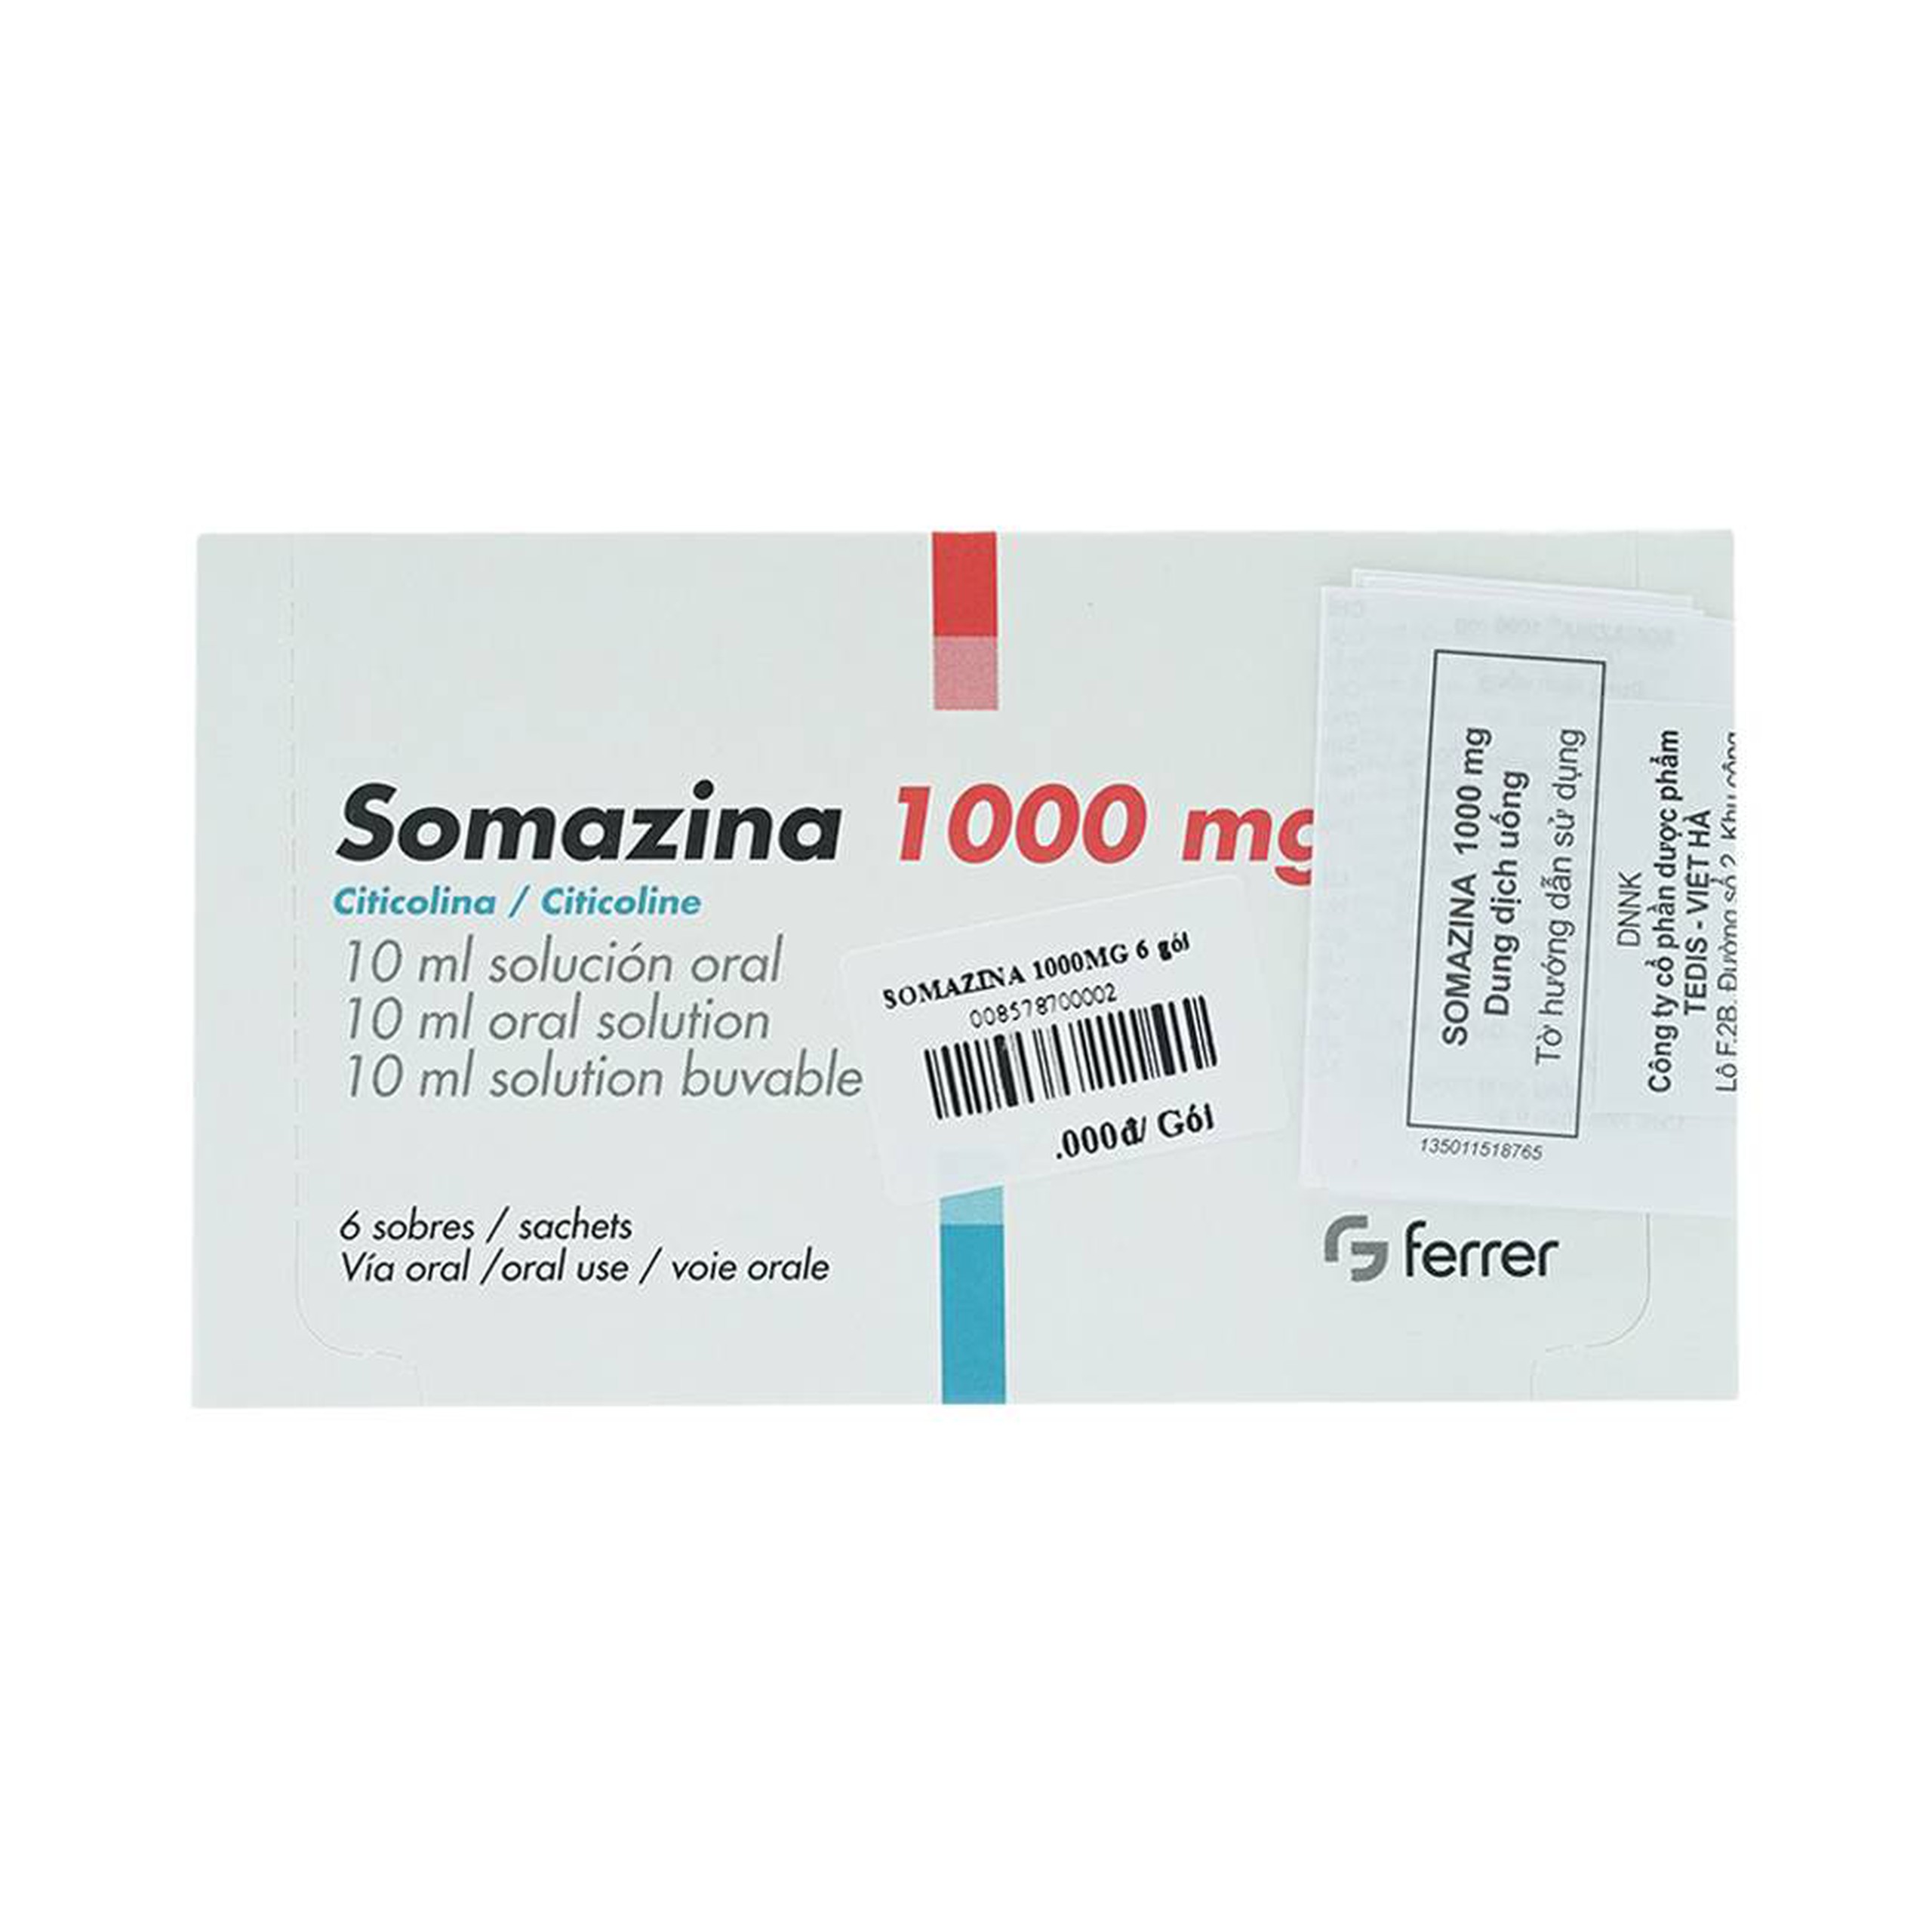 Dung dịch uống Somazina 1000mg Ferrer điều trị các rối loạn nhận thức, cảm giác (6 gói x 10ml)